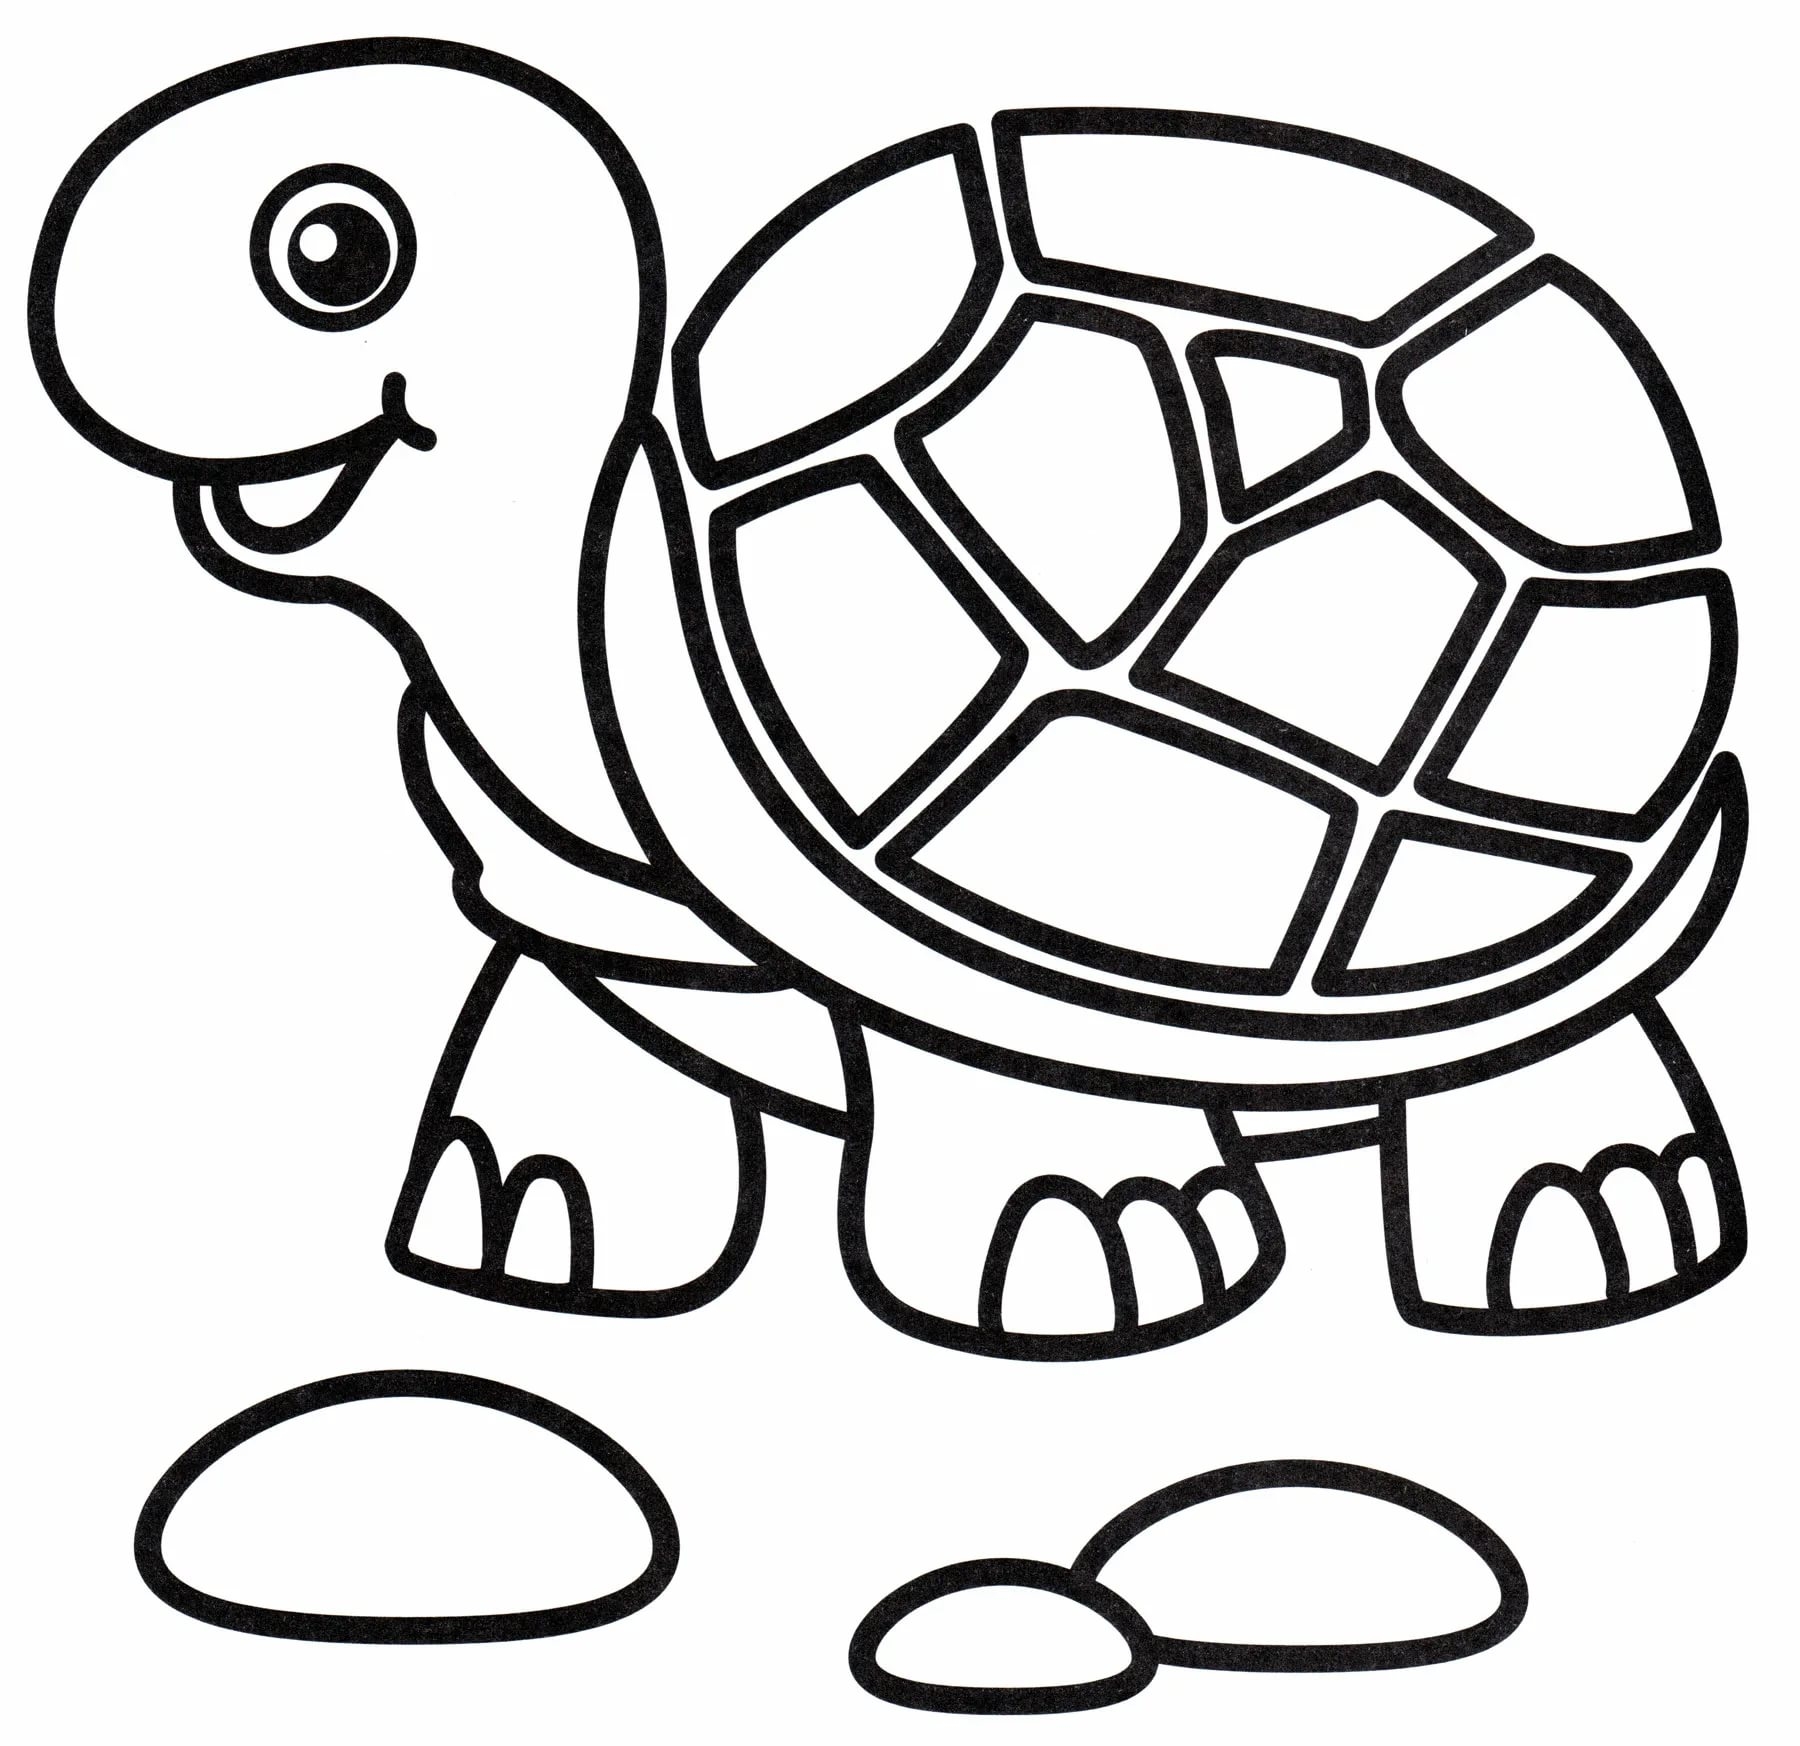 Черепаха рисунок для детей карандашом